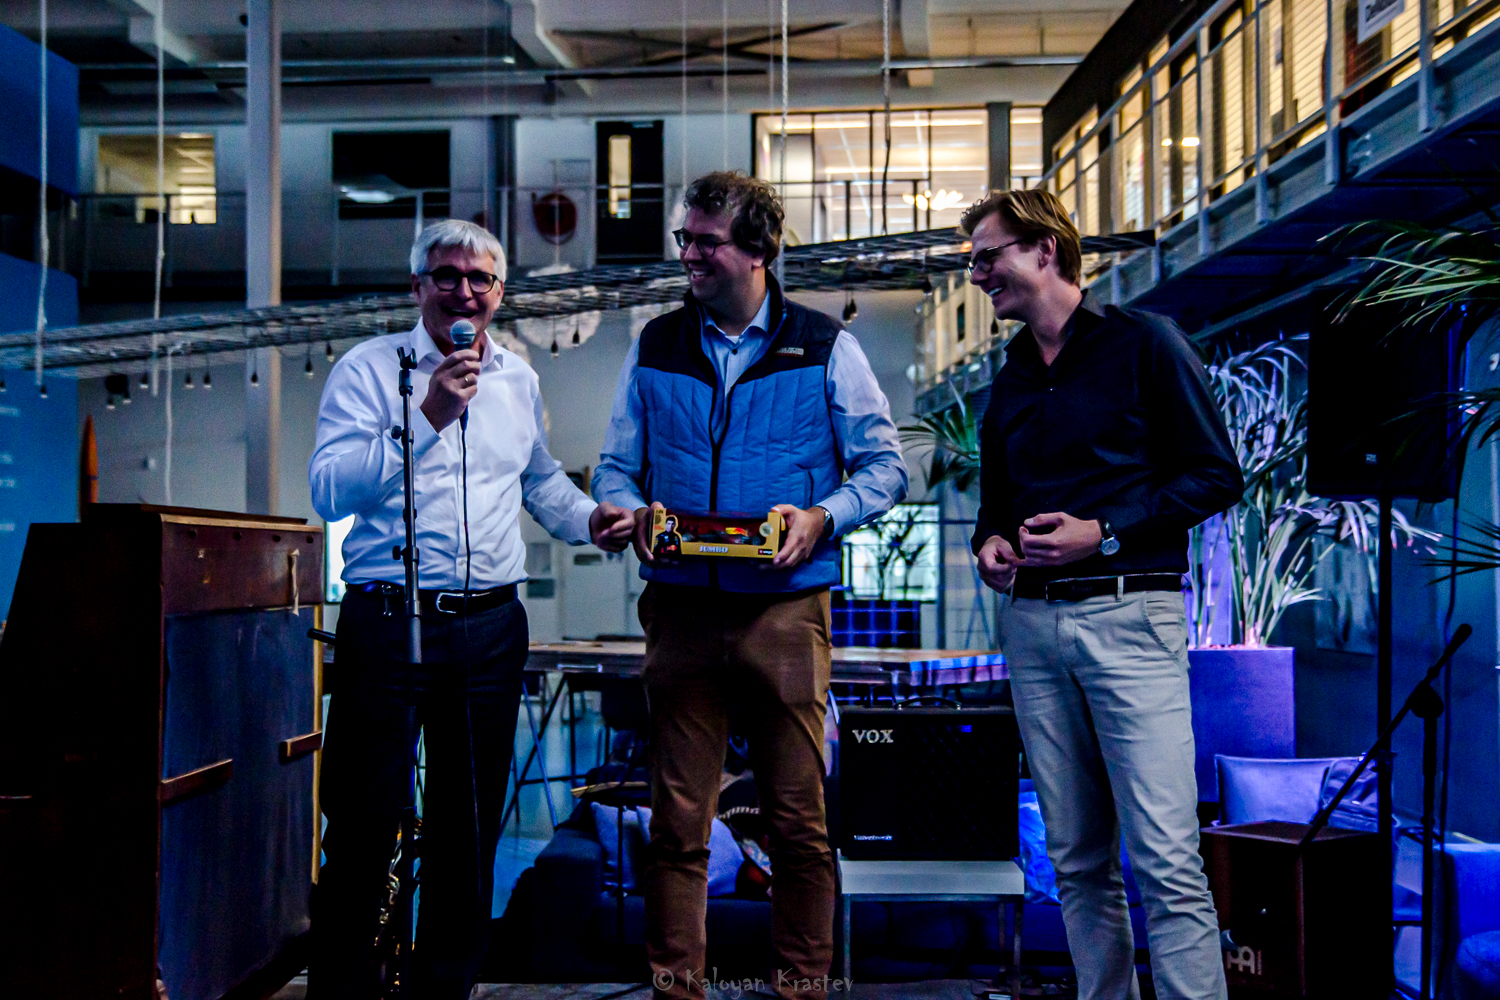 From left to right: Peter Romanow (MÜLLER-BBM AG), Dennis de Klerk & Maarten van der Kooij (both VIBES)